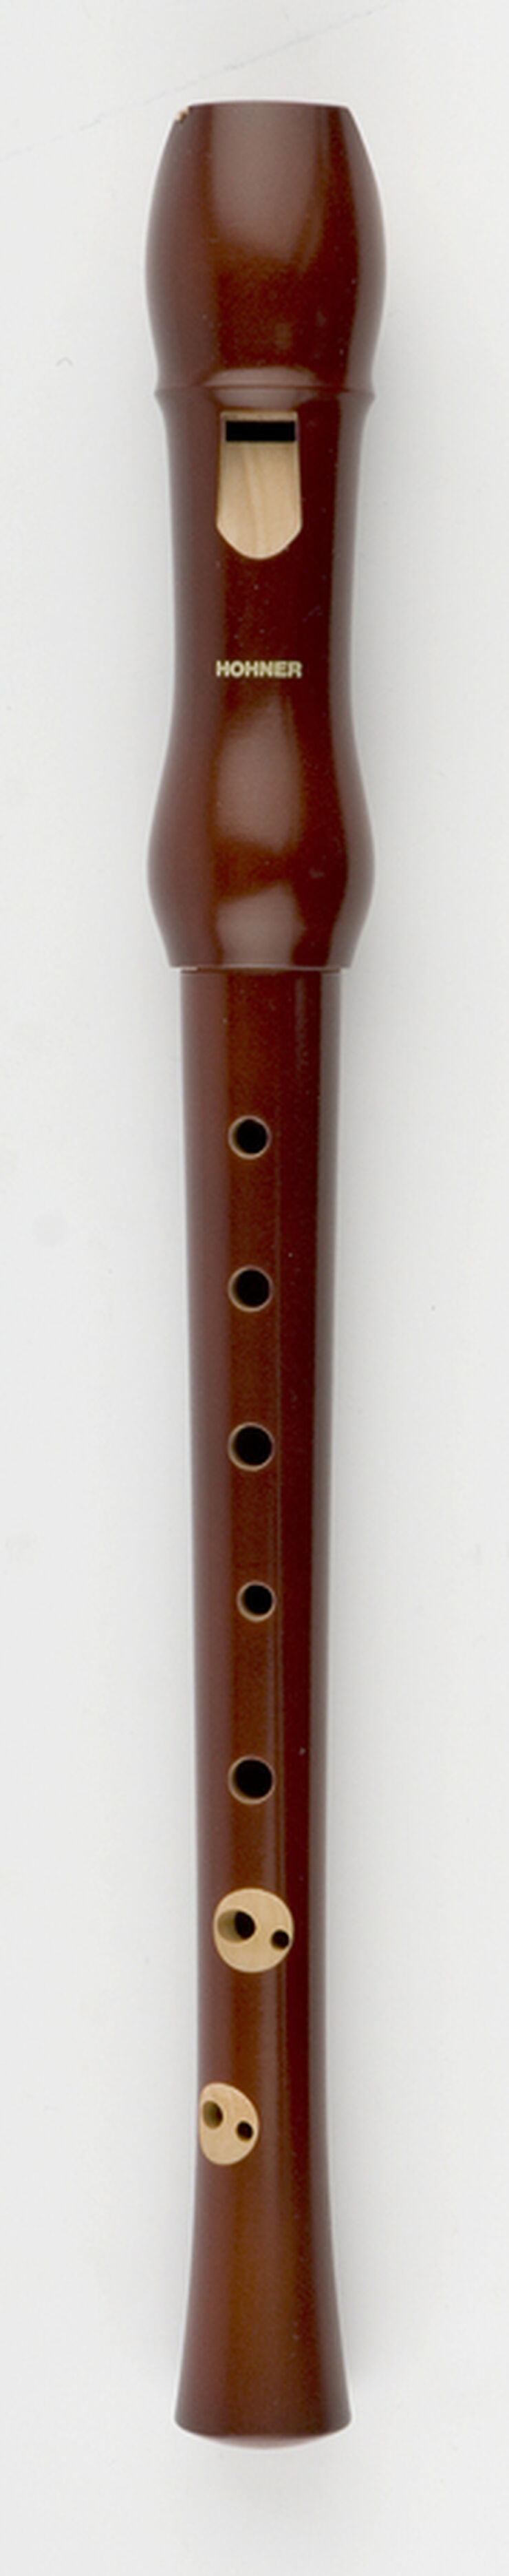 Flauta Hohner Soprà SB 9550 Fusta